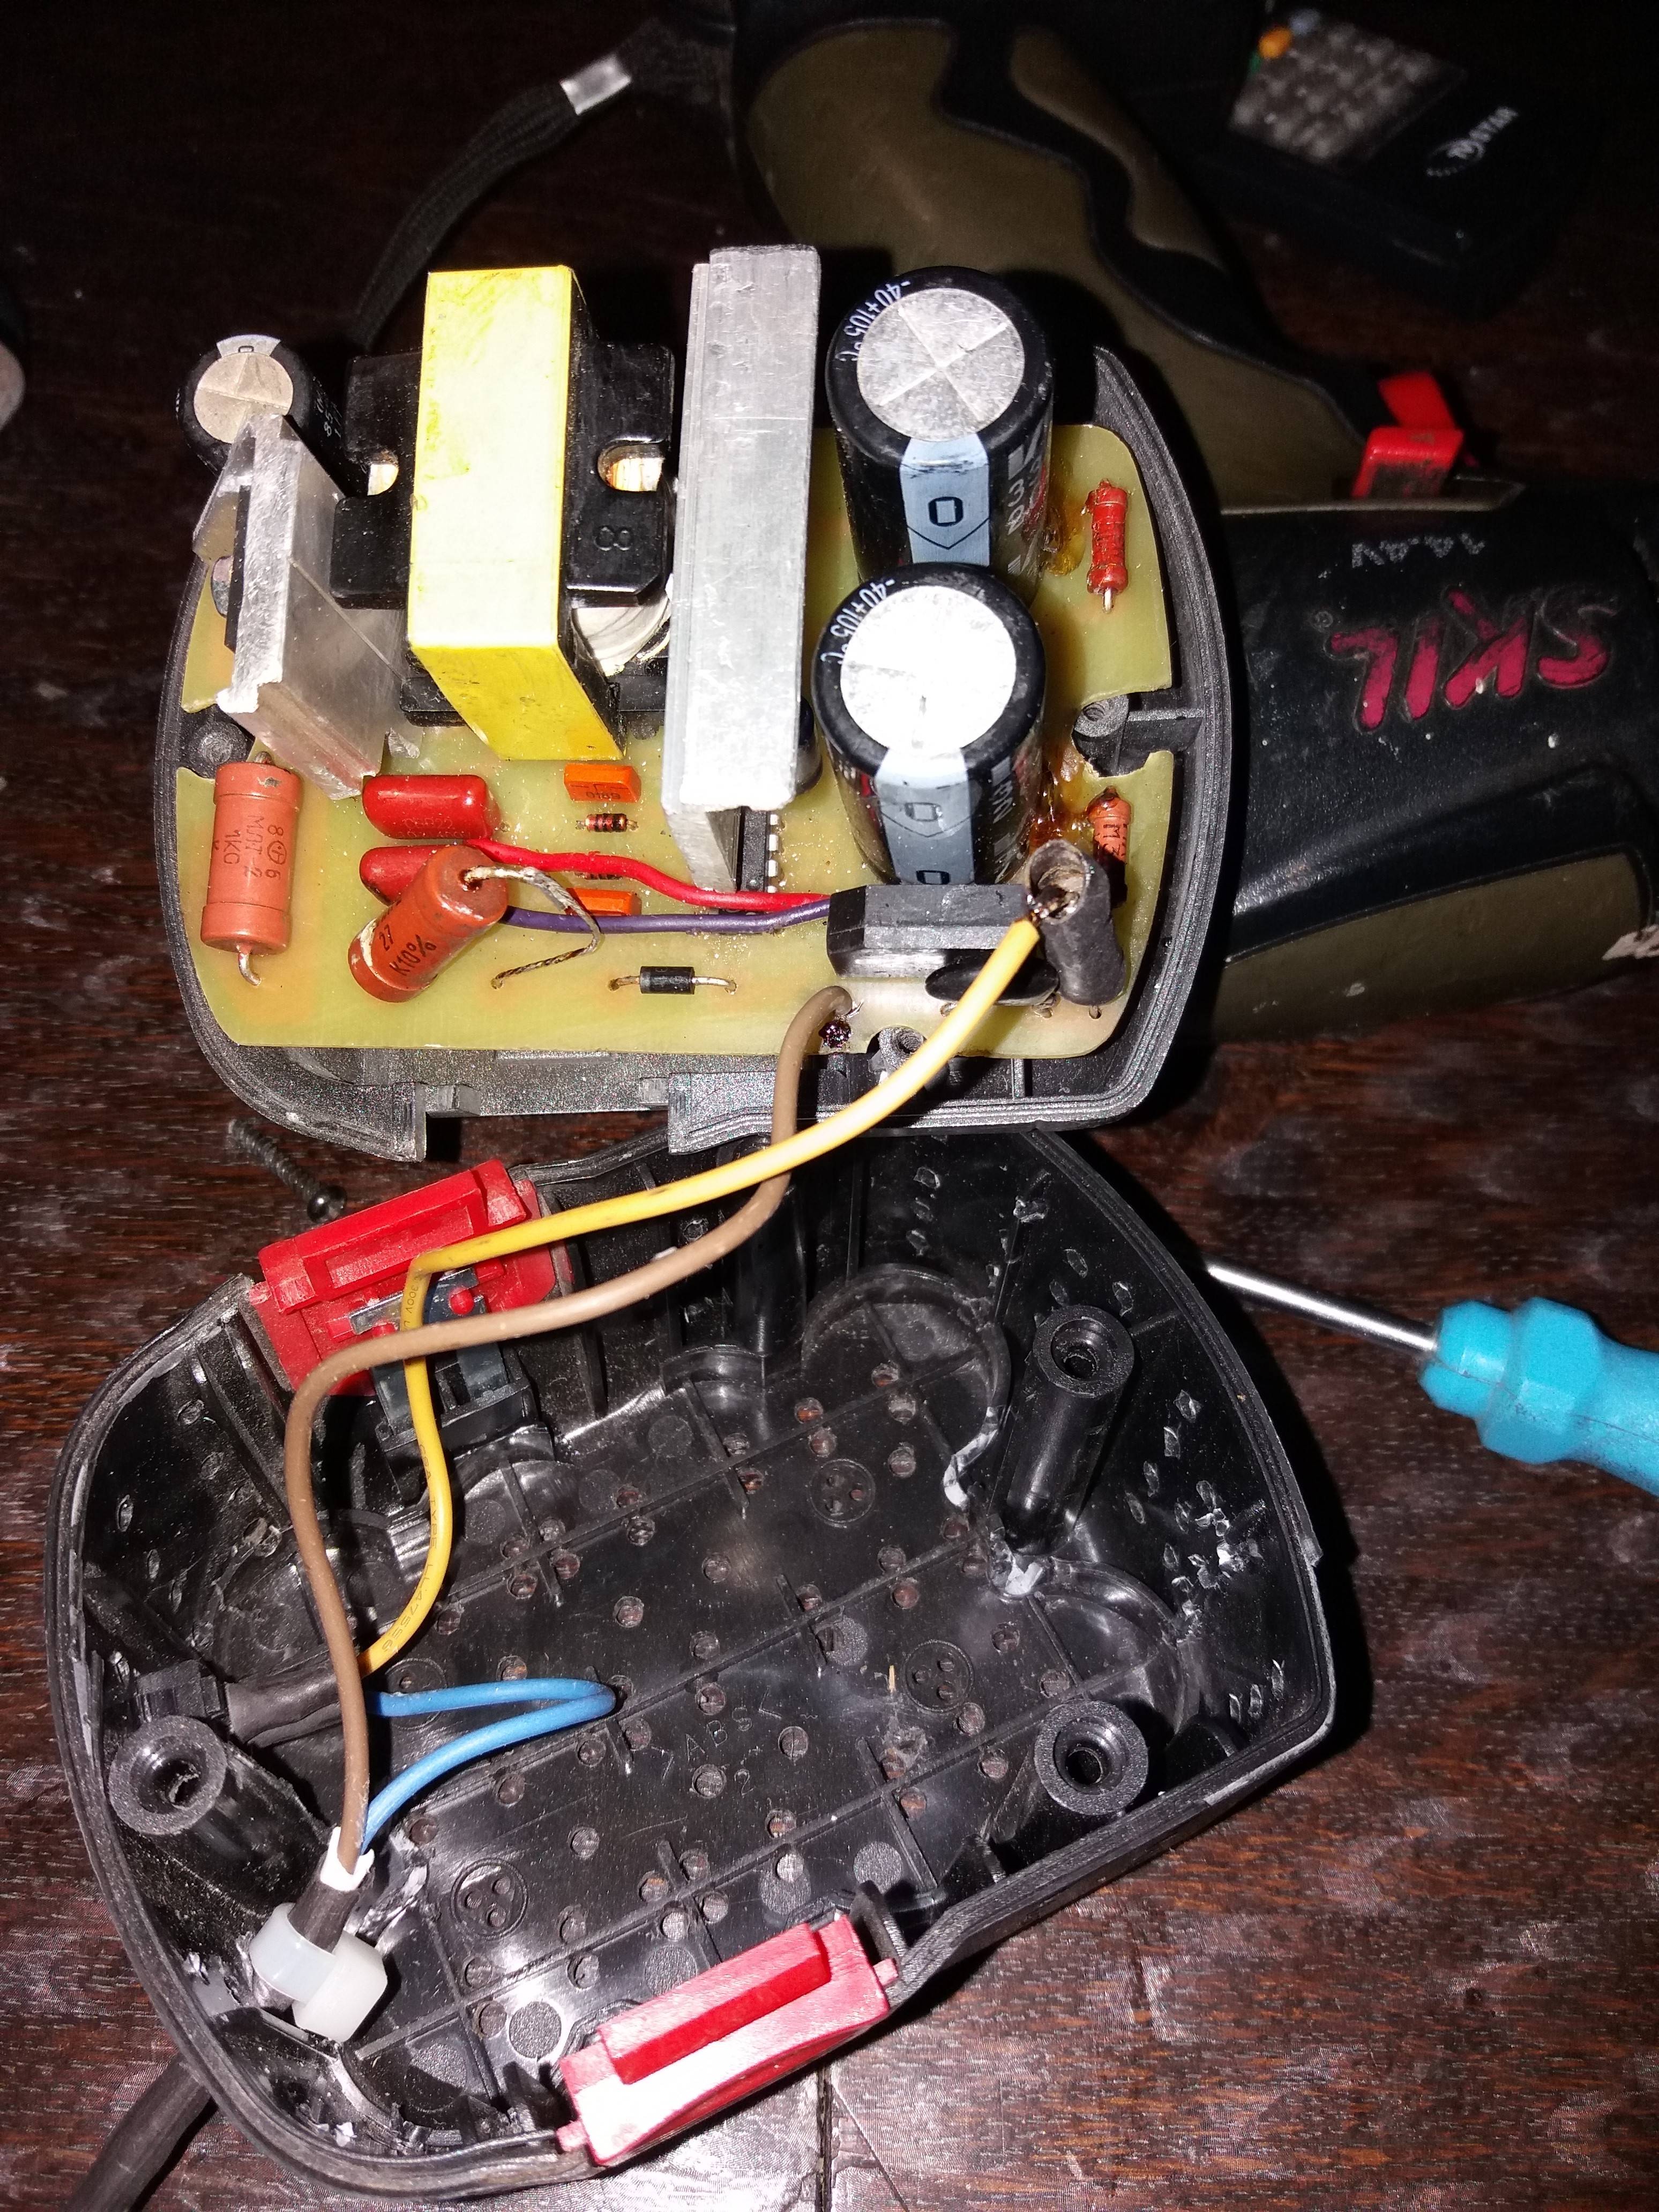 Переделка аккумуляторного шуруповерта для работы от сети